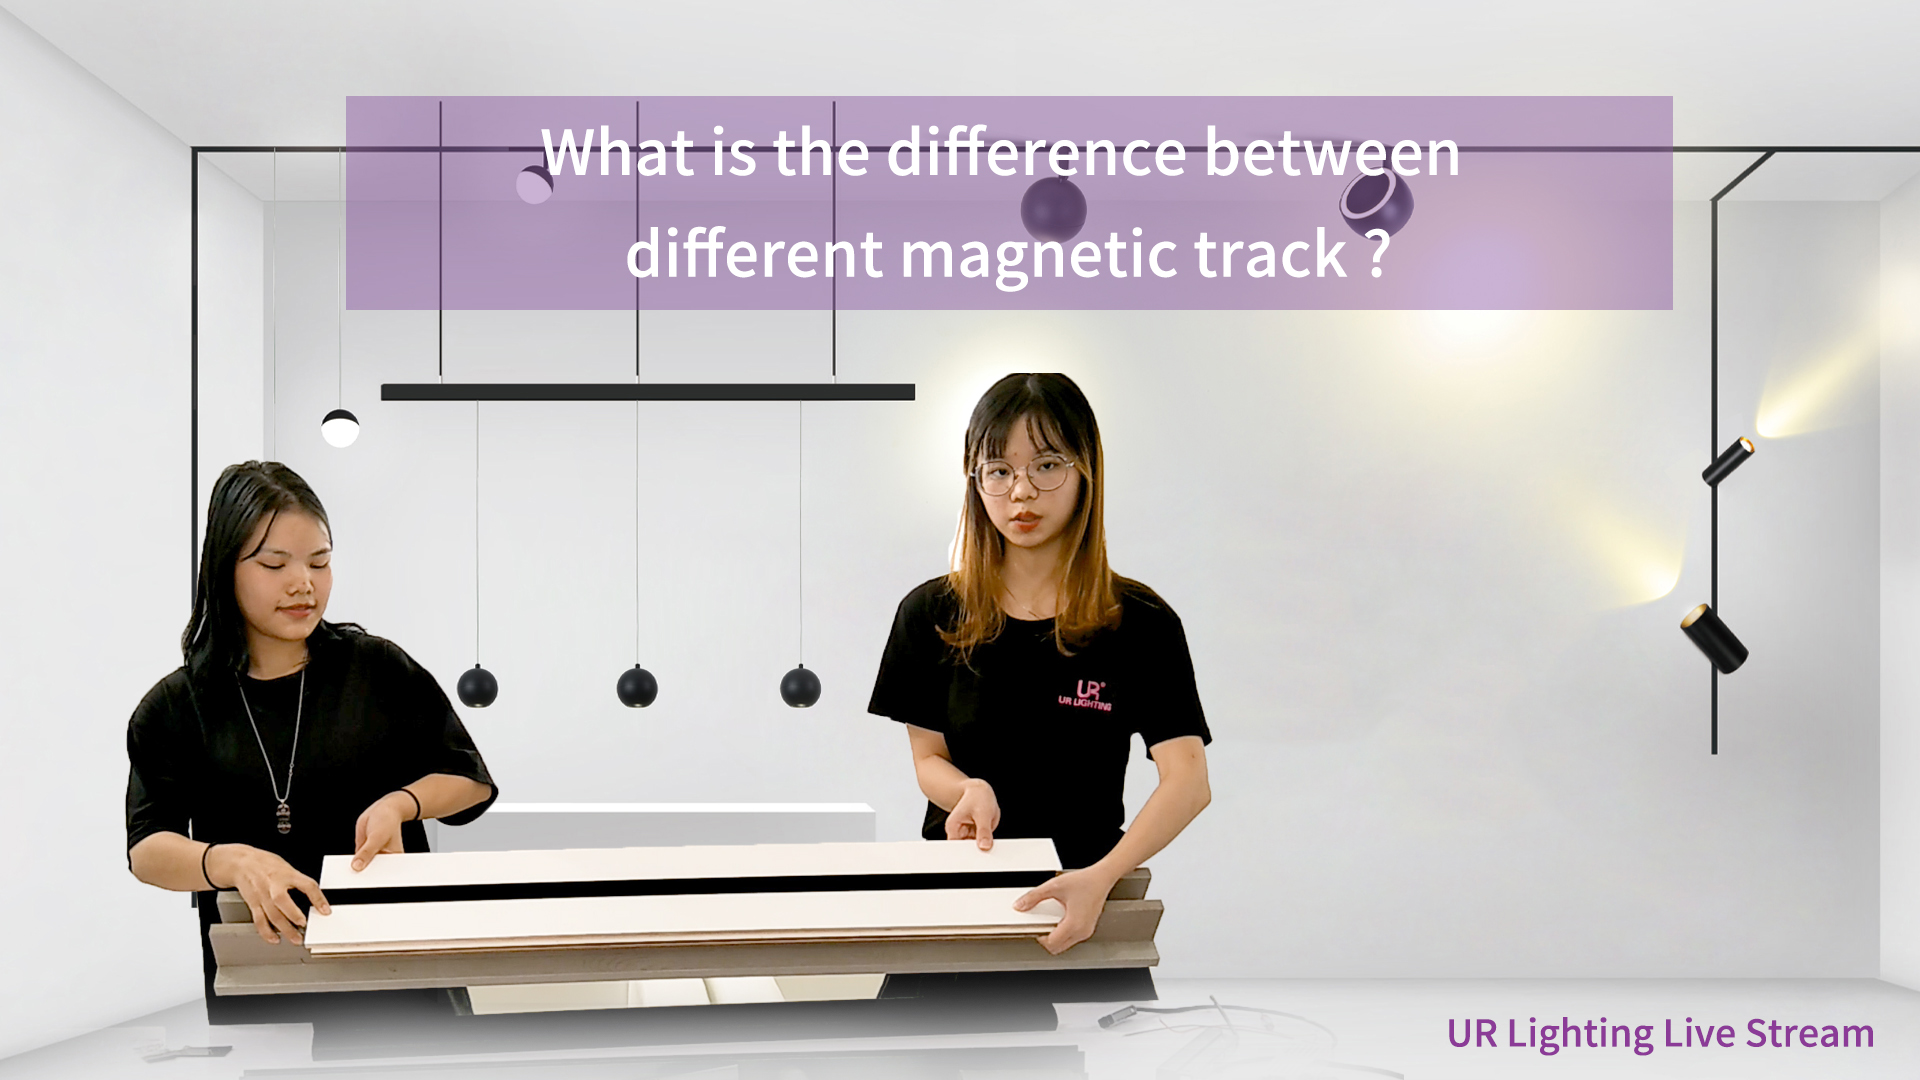 ¿Cuál es la diferencia entre la pista magnética diferente?